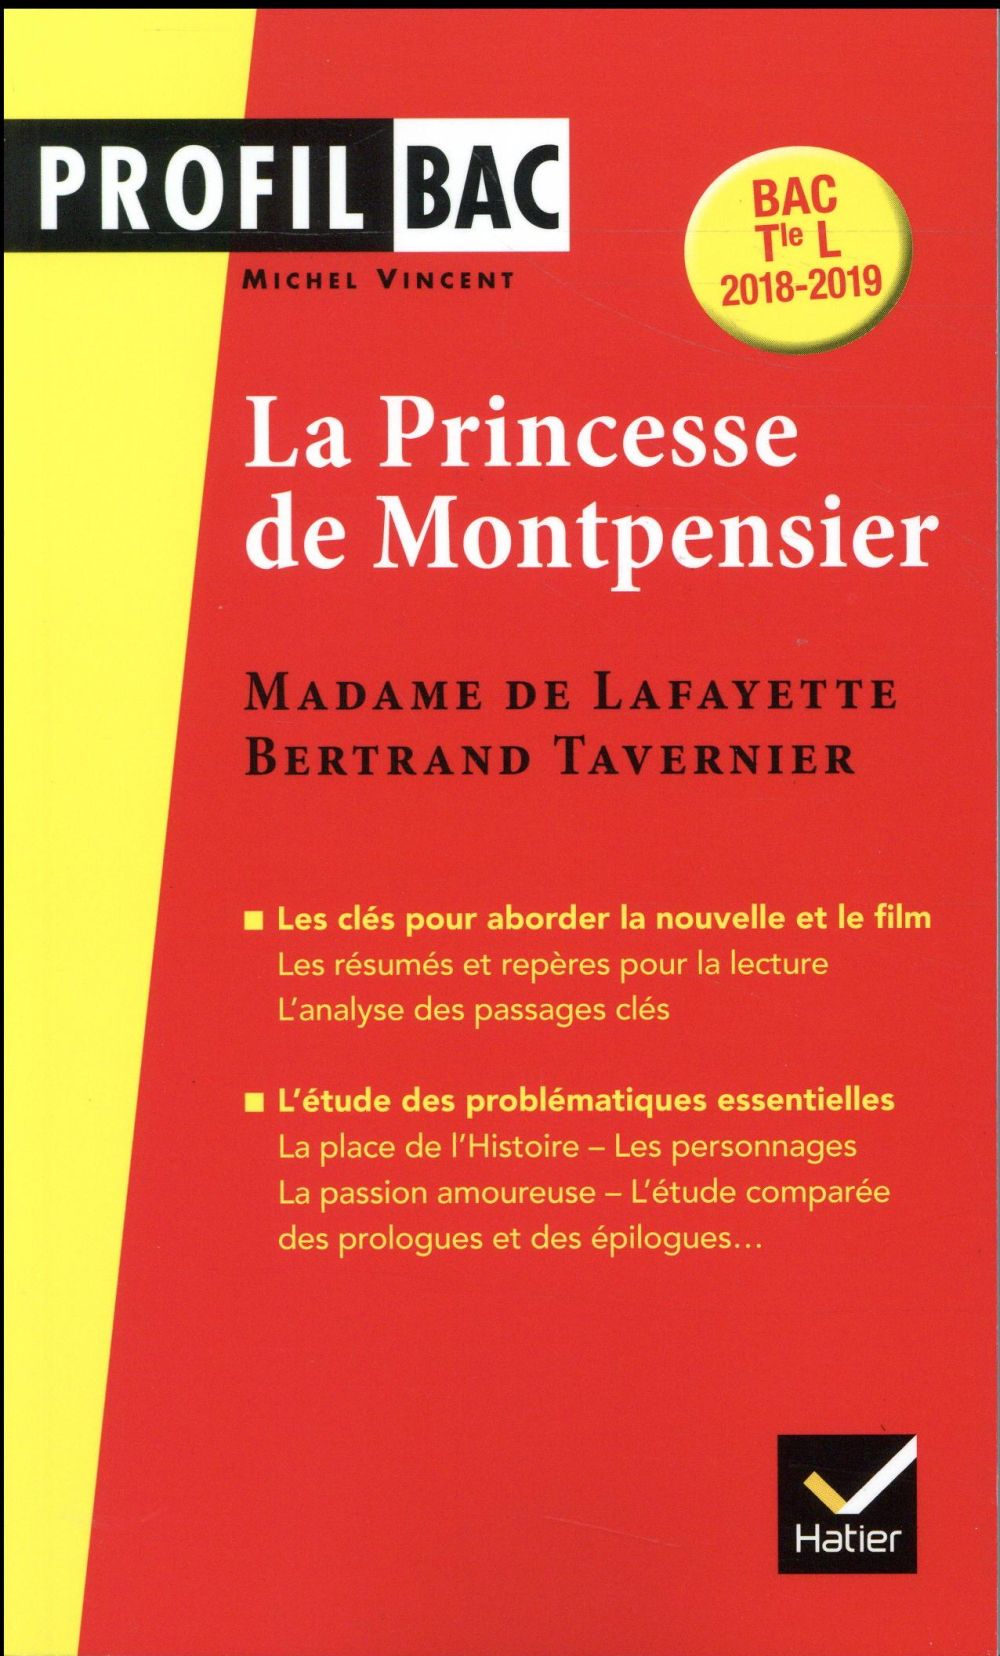 PROFIL - MME DE LAFAYETTE/B. TAVERNIER, LA PRINCESSE DE MONTPENSIER - ANALYSE COMPAREE DES DEUX OEUV